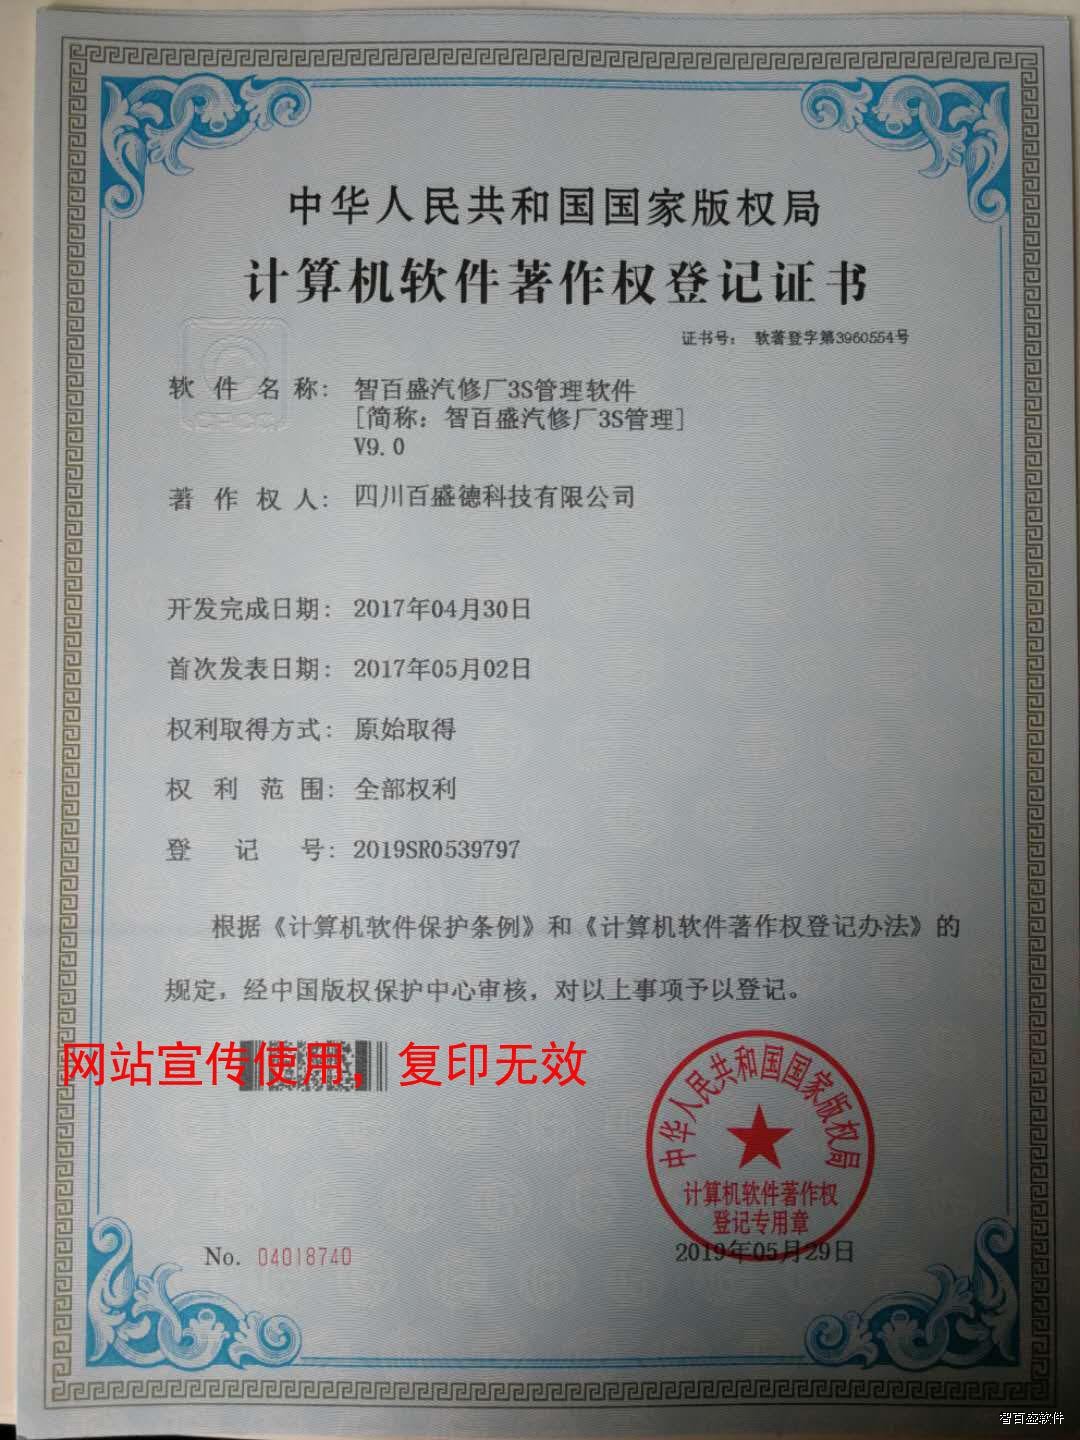 热烈祝贺我公司智百盛汽修厂3S管理系统V9.0著作版权审核成功